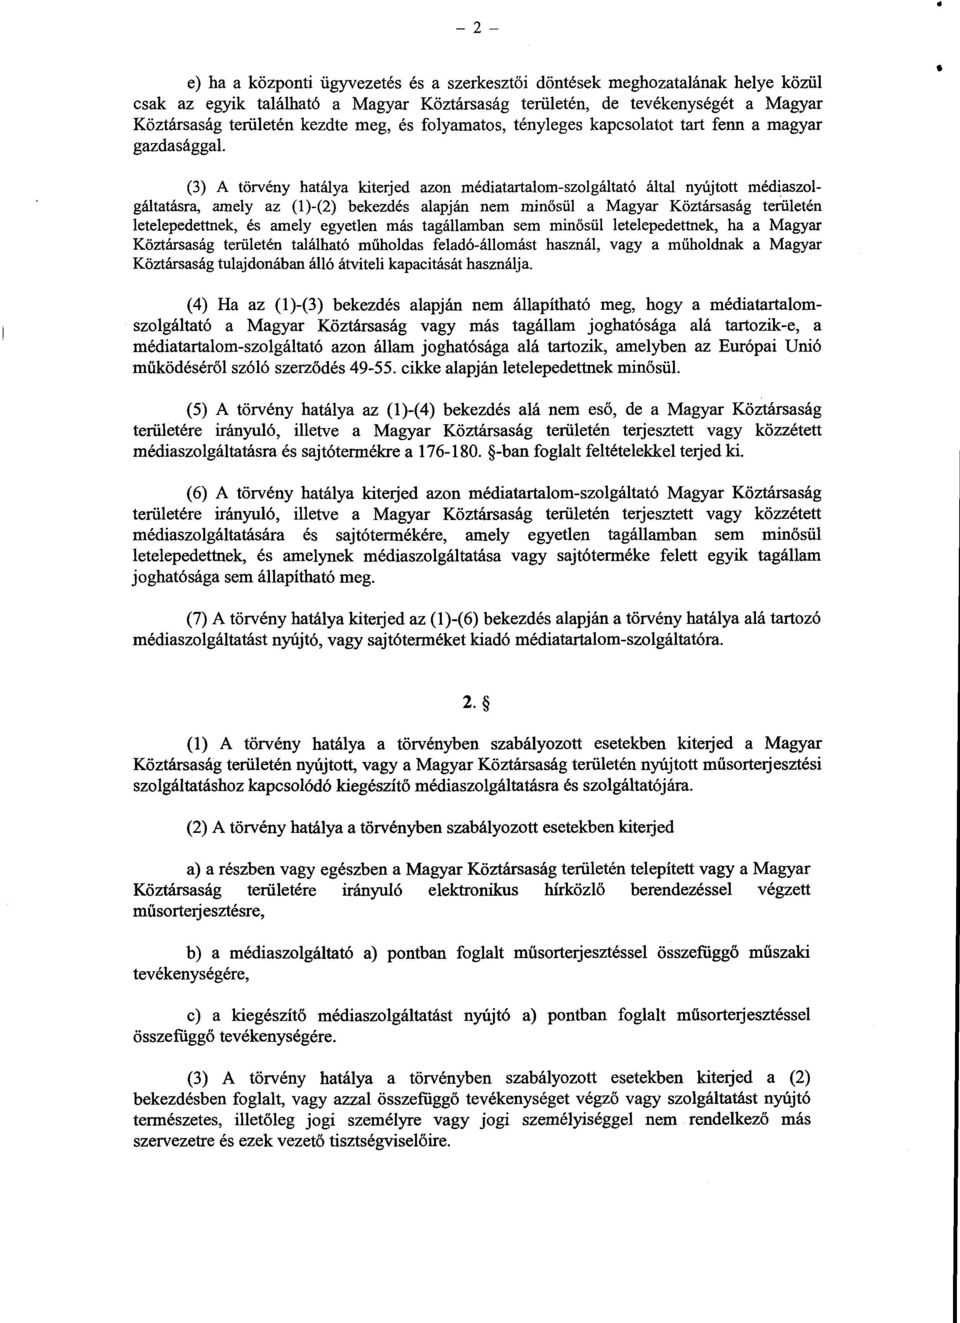 (3) A törvény hatálya kiterjed azon médiatartalom-szolgáltató által nyújtott médiaszolgáltatásra, amely az (1)-(2) bekezdés alapján nem min ősül a Magyar Köztársaság területén letelepedettnek, és